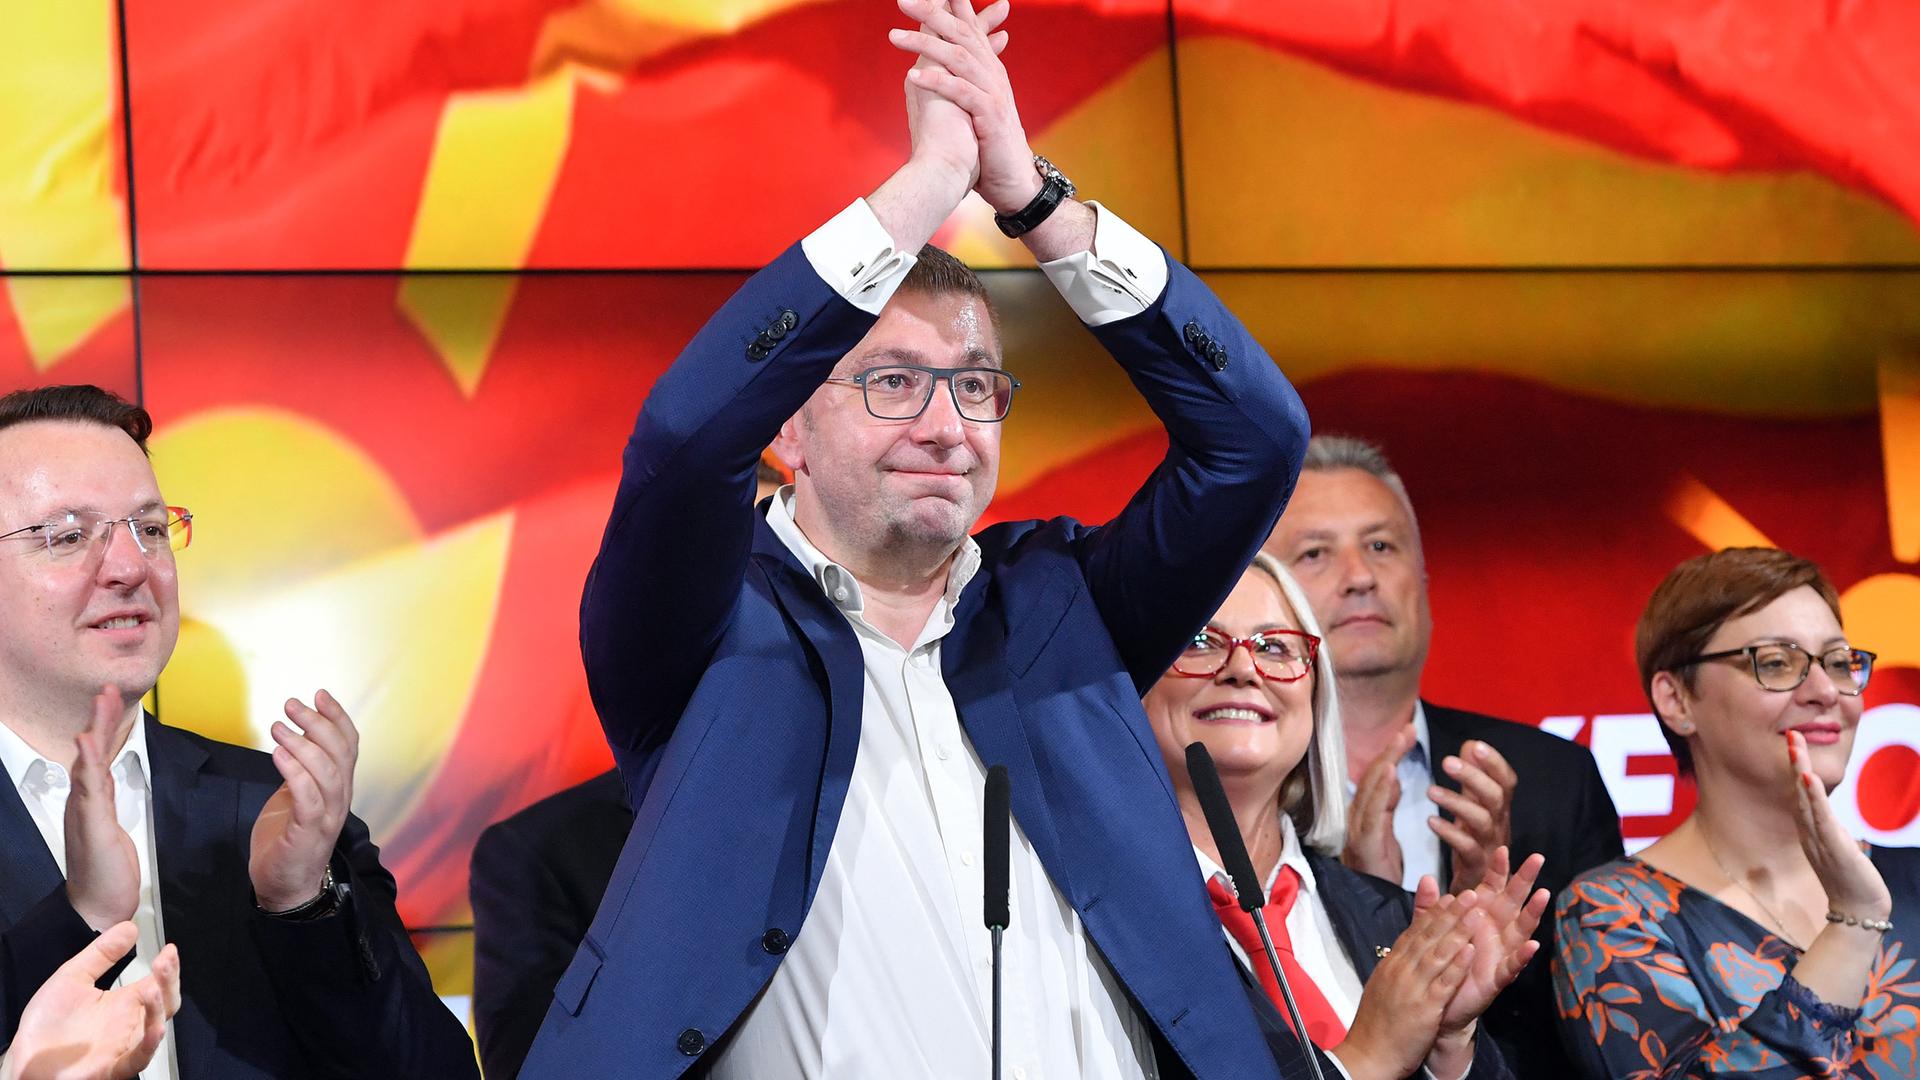 Hiristijan Mickovski mit einer Siegerpose nach der Parlamentswahl in Nordmazedonien